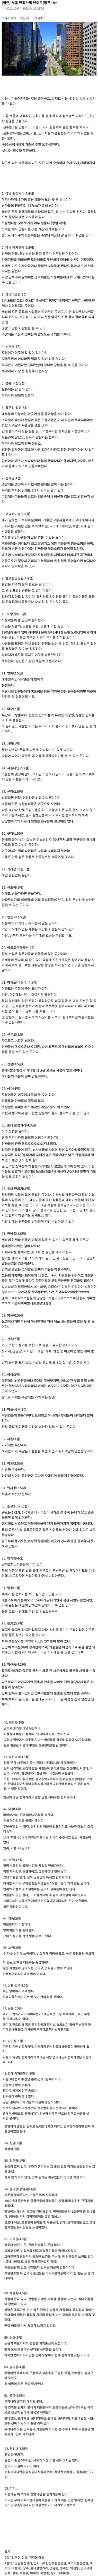 서울 번화가 63개 난이도 리뷰 레전드